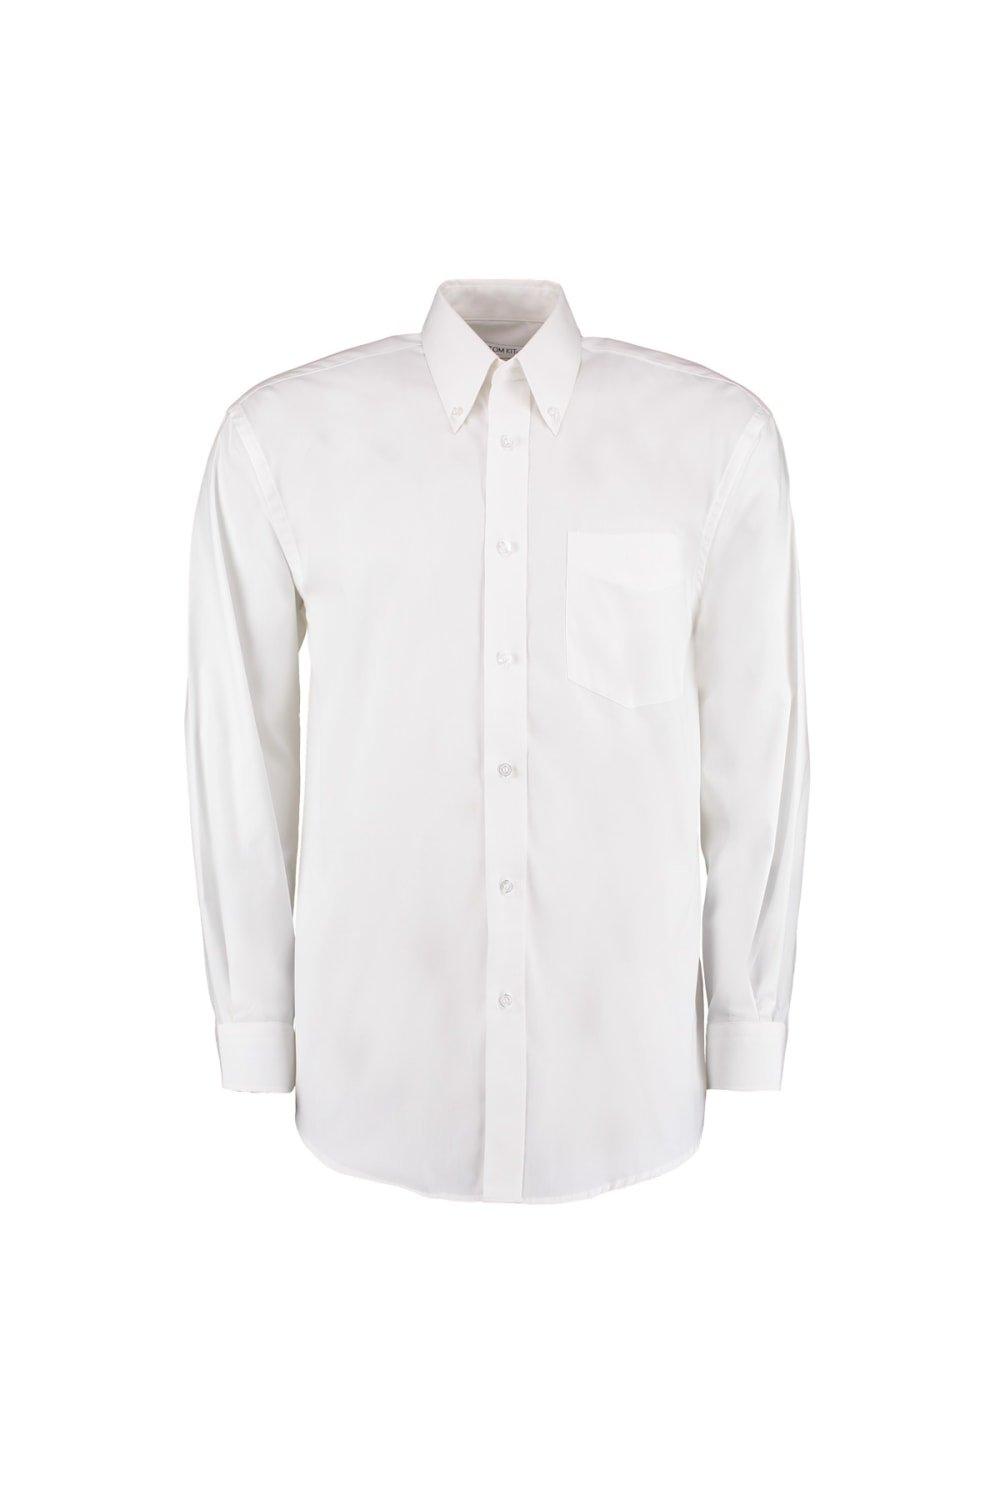 Корпоративная оксфордская рубашка с длинным рукавом Kustom Kit, белый